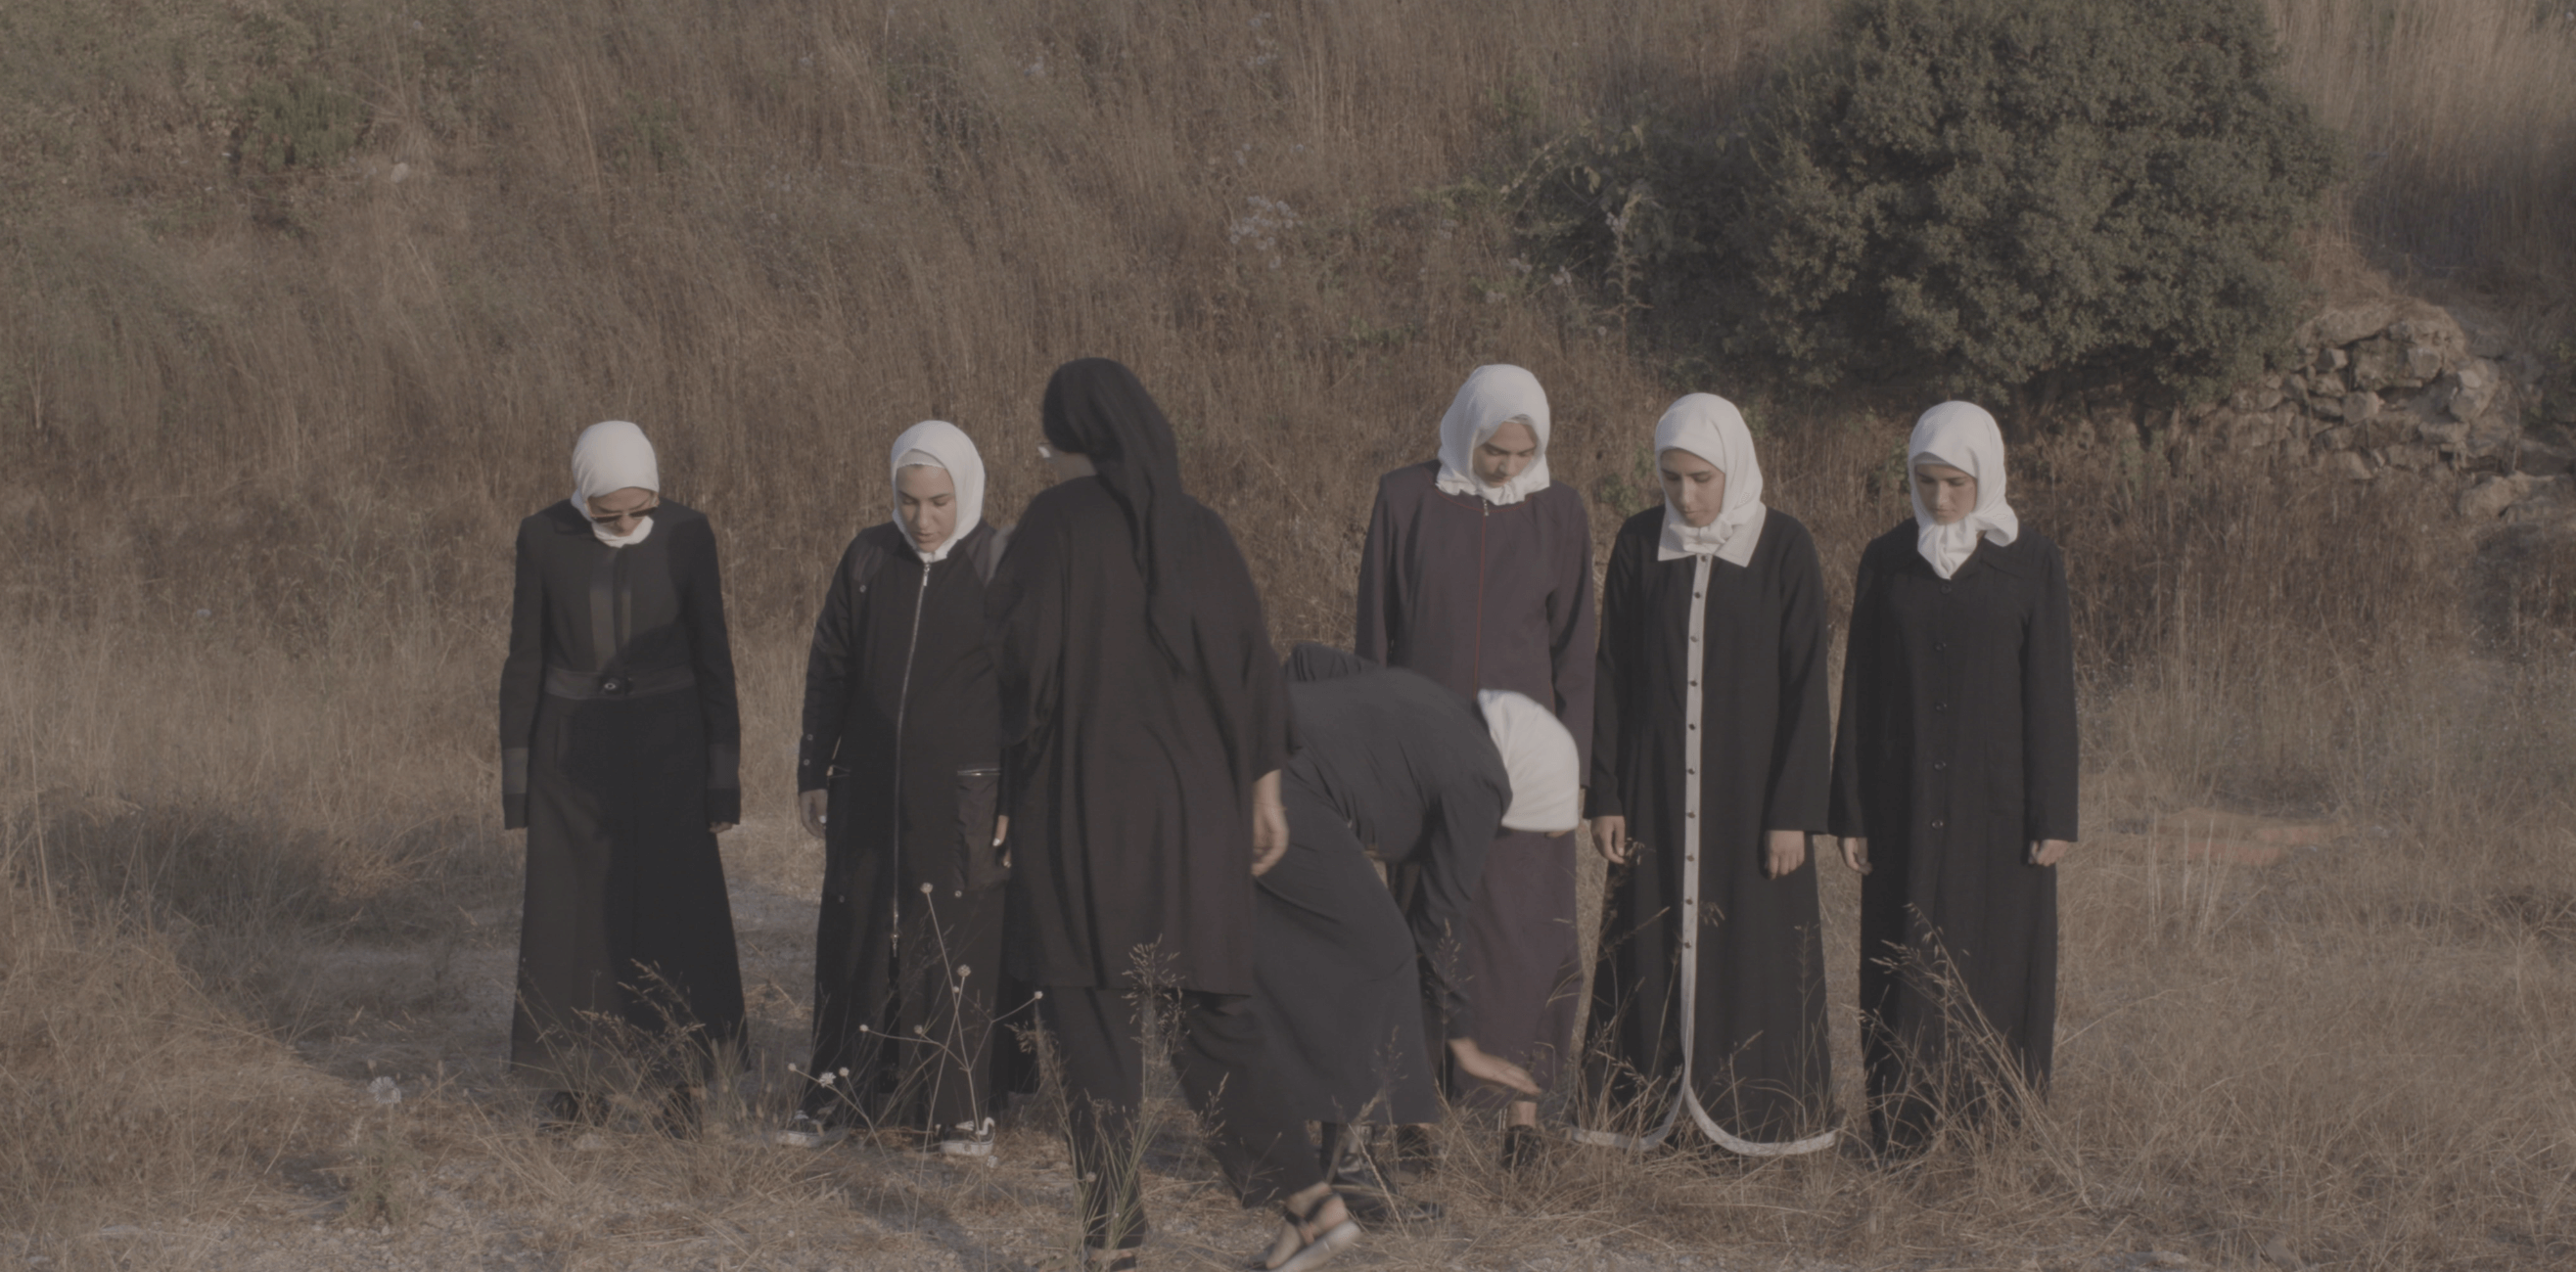 Still from Q. Seven women wearing hijabs in a field.